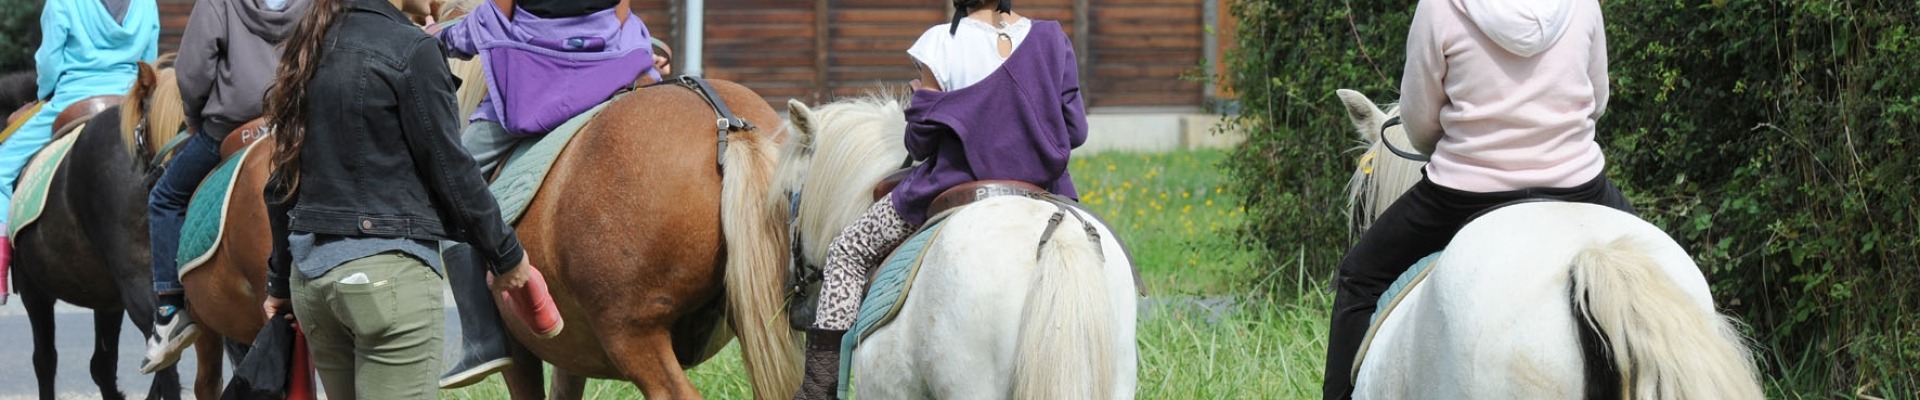 Des enfants partent en balade à dos de poney